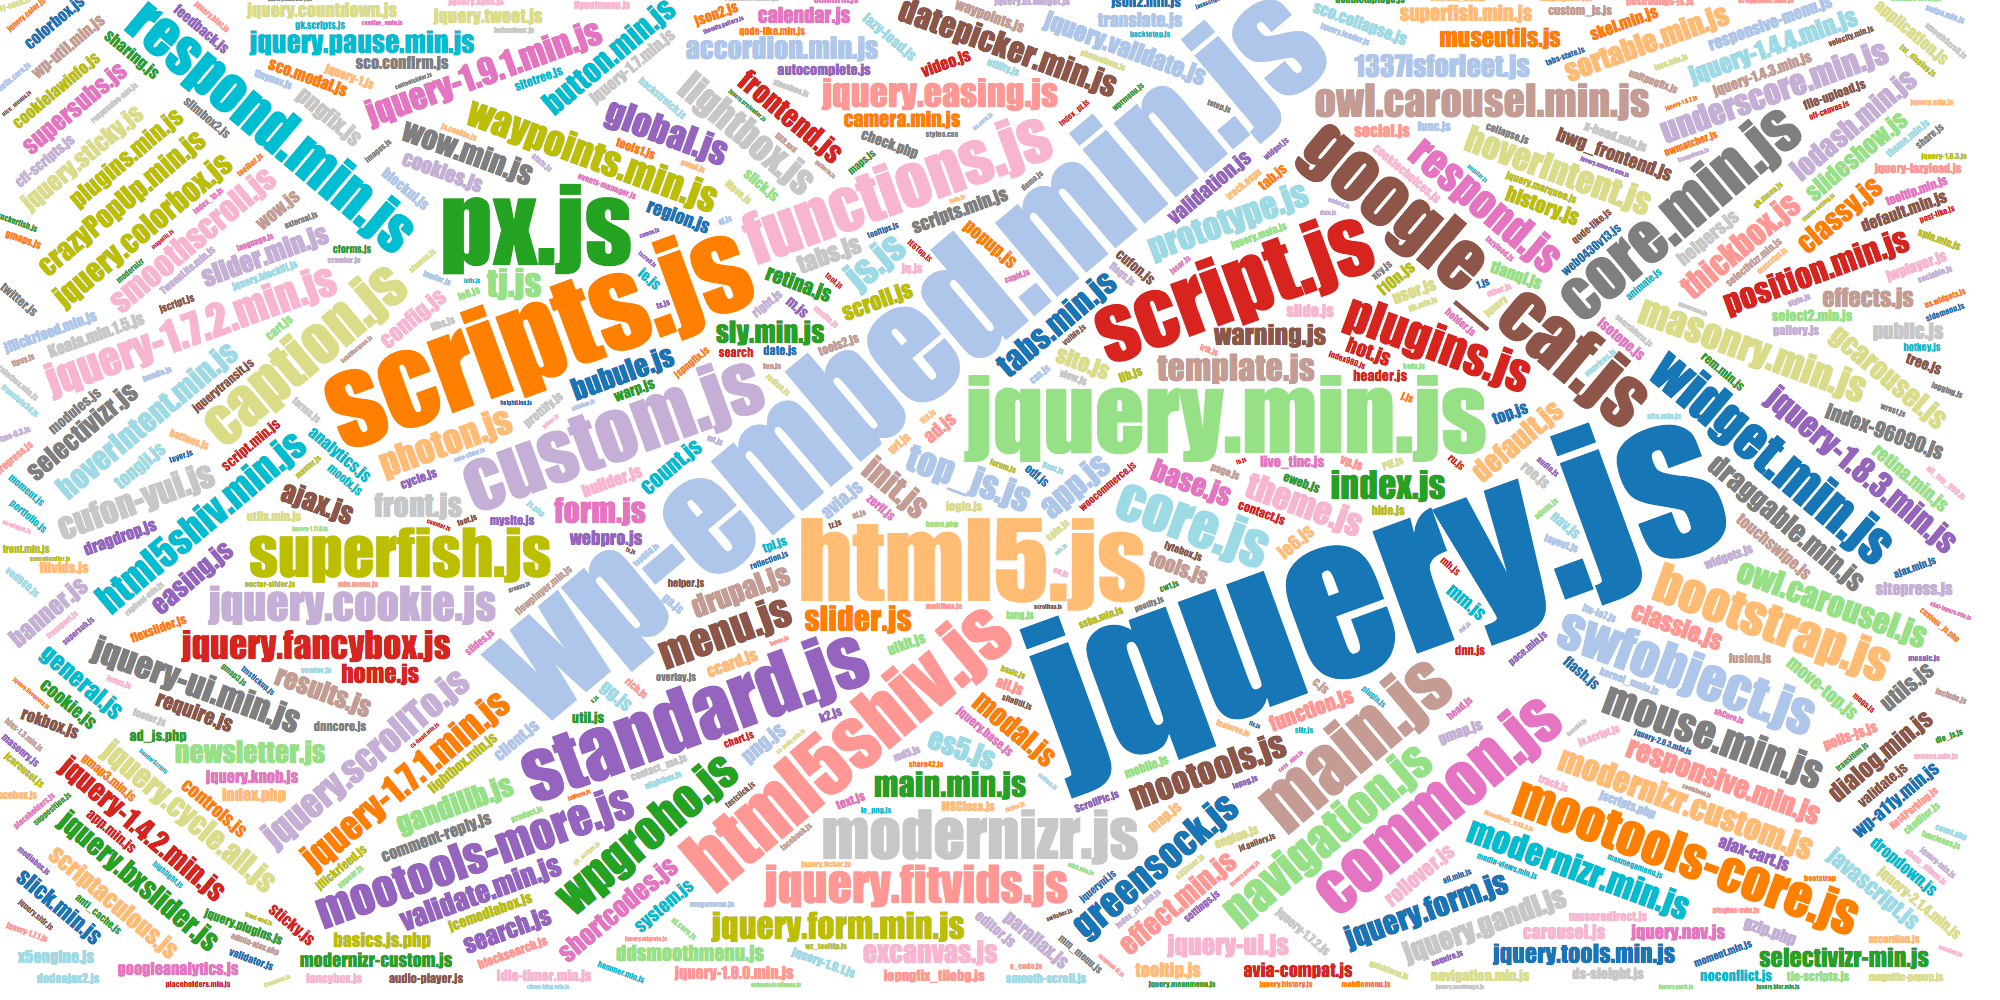 Popular names of JS files main.js, modernizr.js, etc.